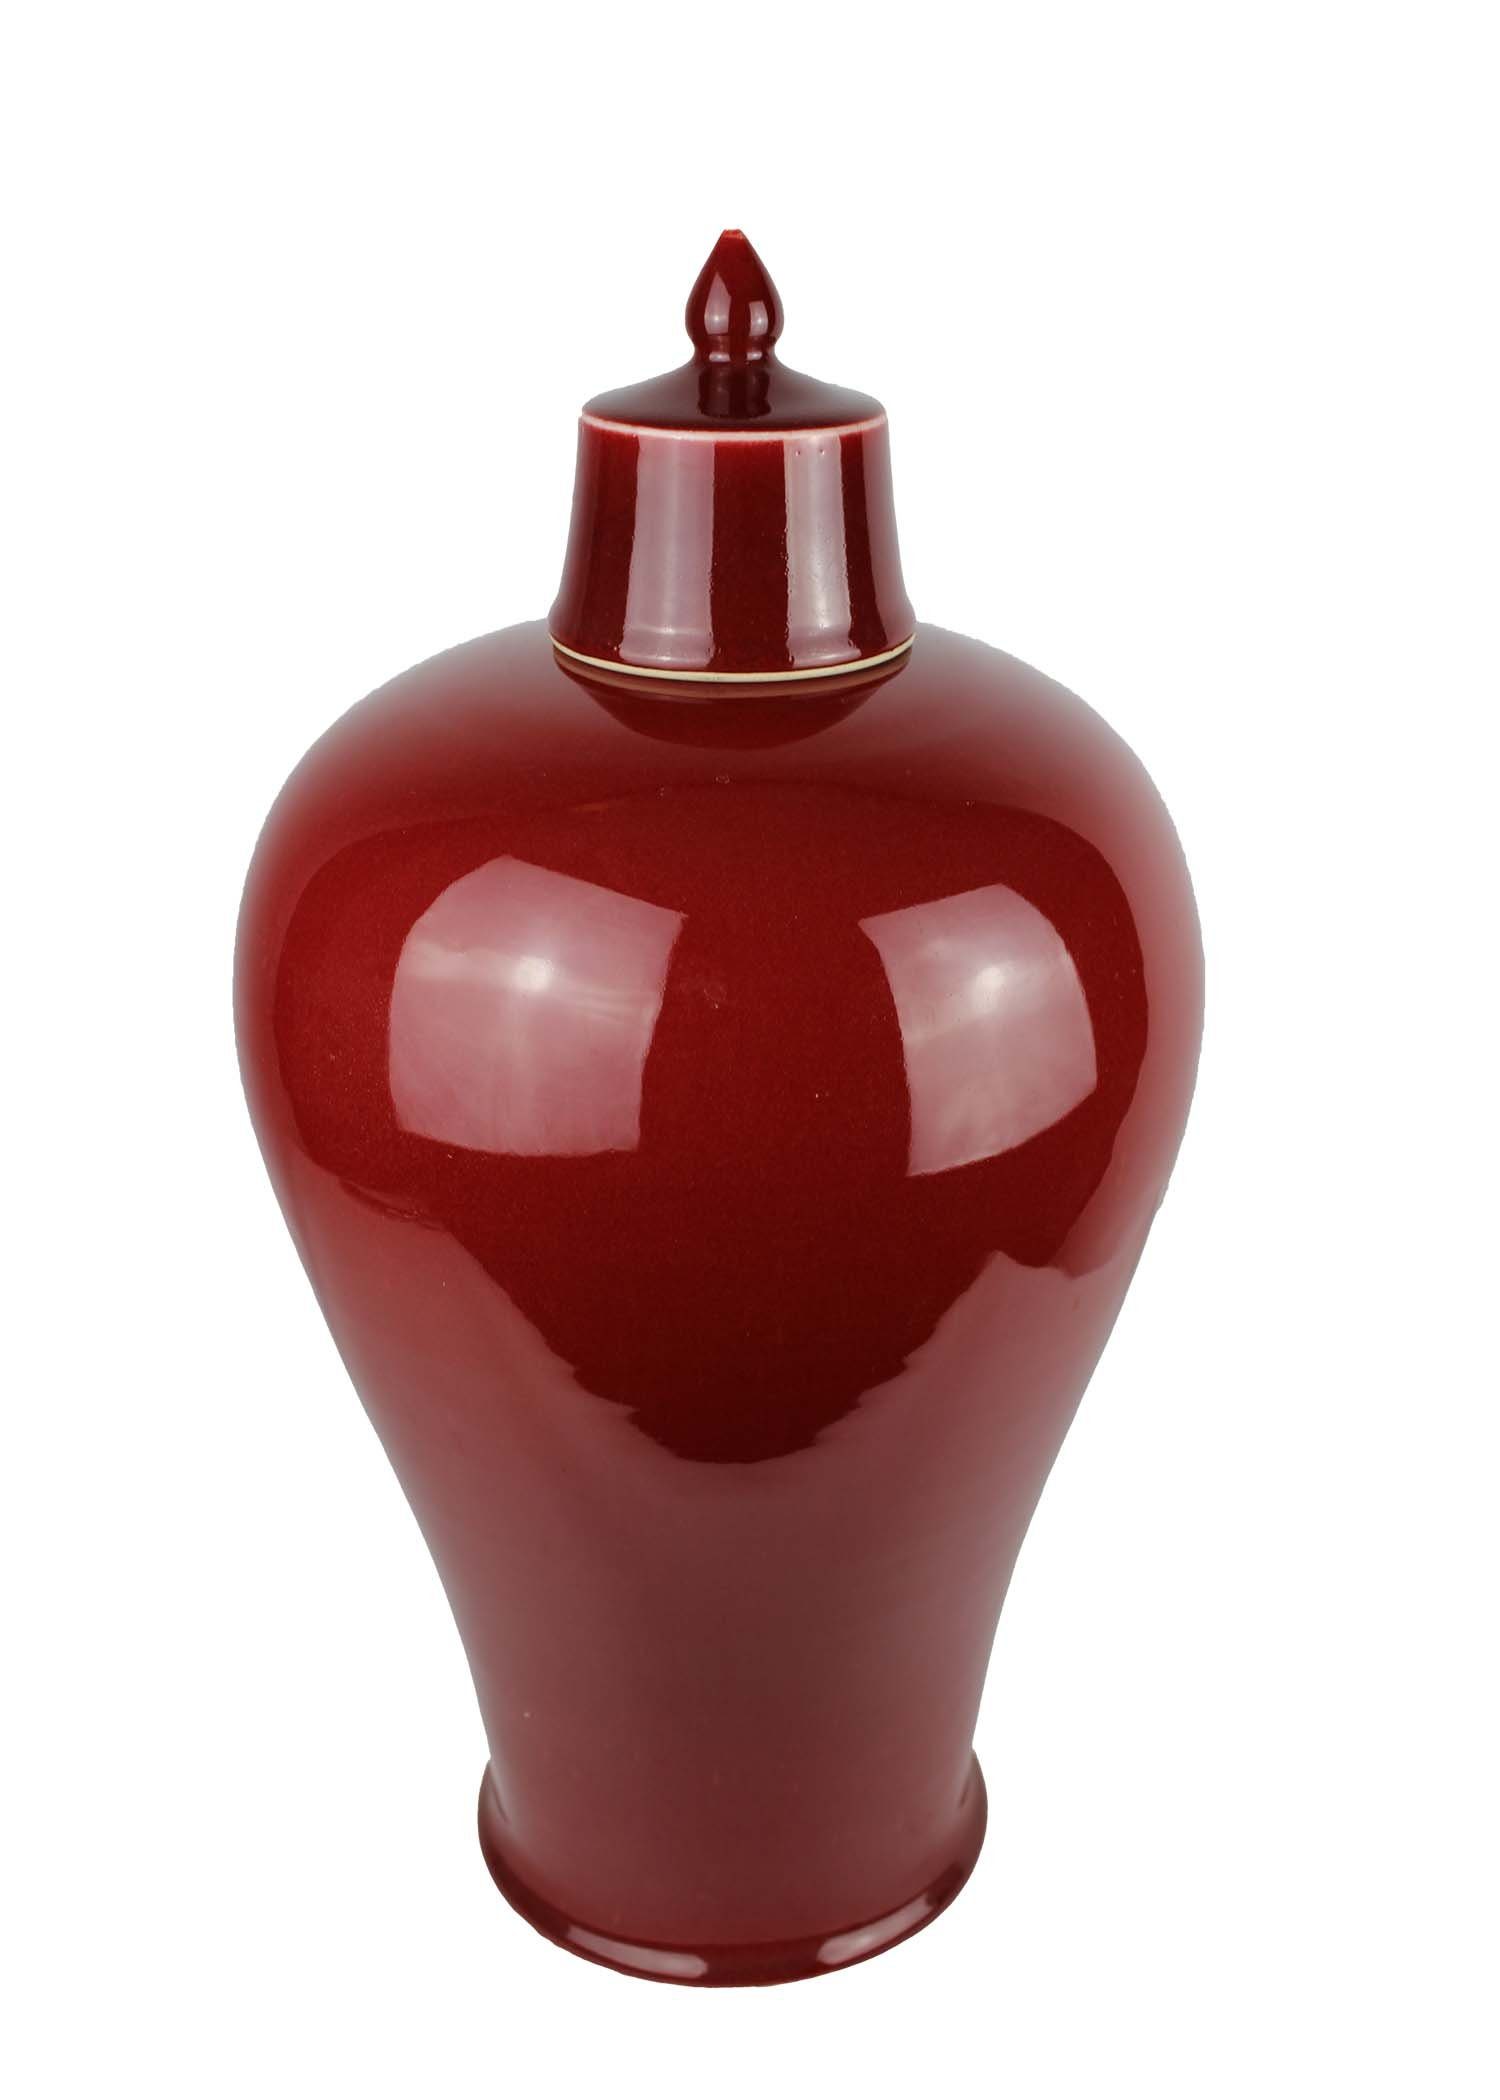 Signature Home Collection Dekovase Deckelvase Porzellan rot 49 cm mit Deckel (Stück, 1 Vase), aus glänzendem Porzellan rot mit Deckel